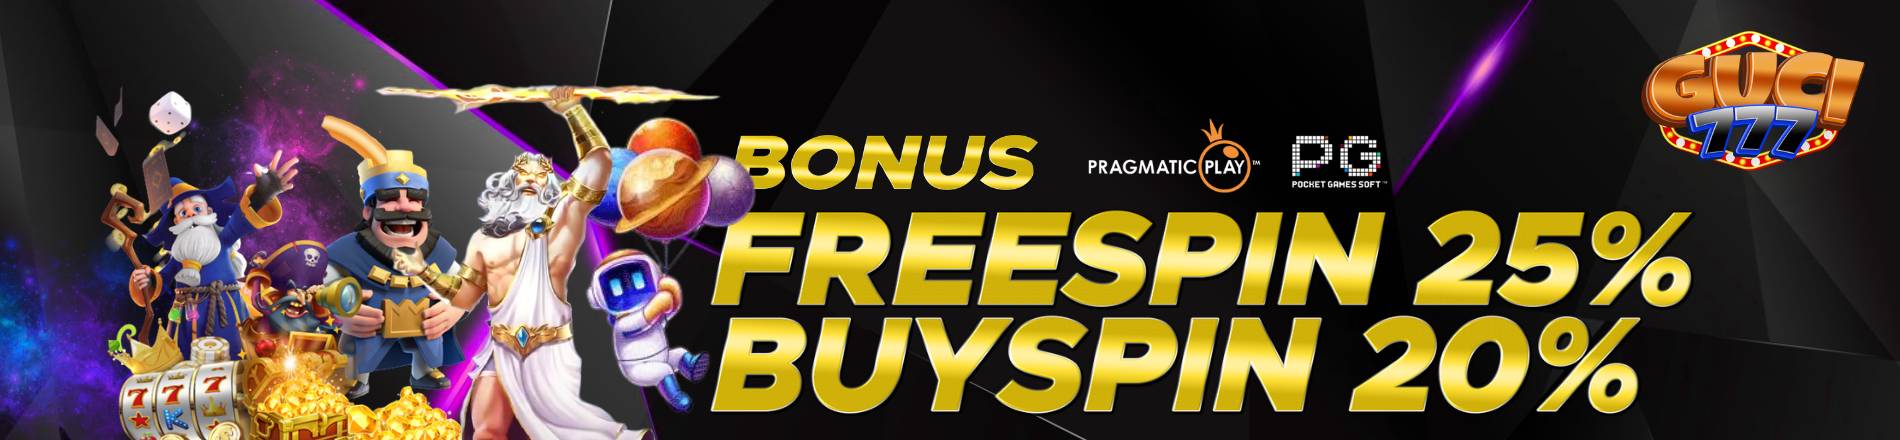 Bonus Freespin & Buyspin GUCI777